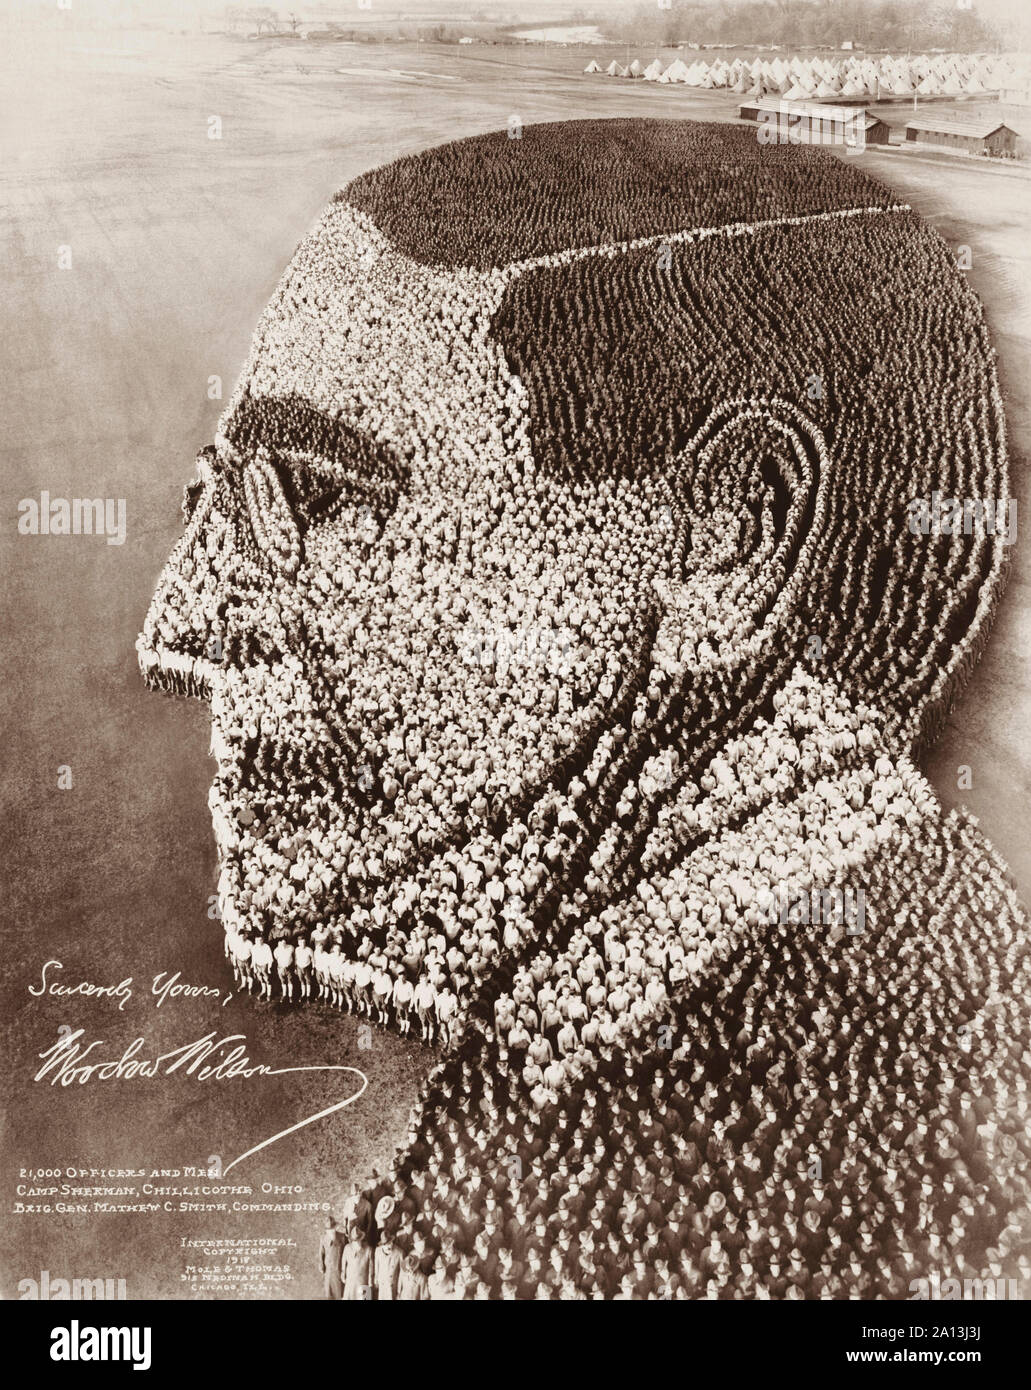 Einen Menschen - Bildung, eine Büste Profil von US-Präsident Woodrow Wilson. Stockfoto